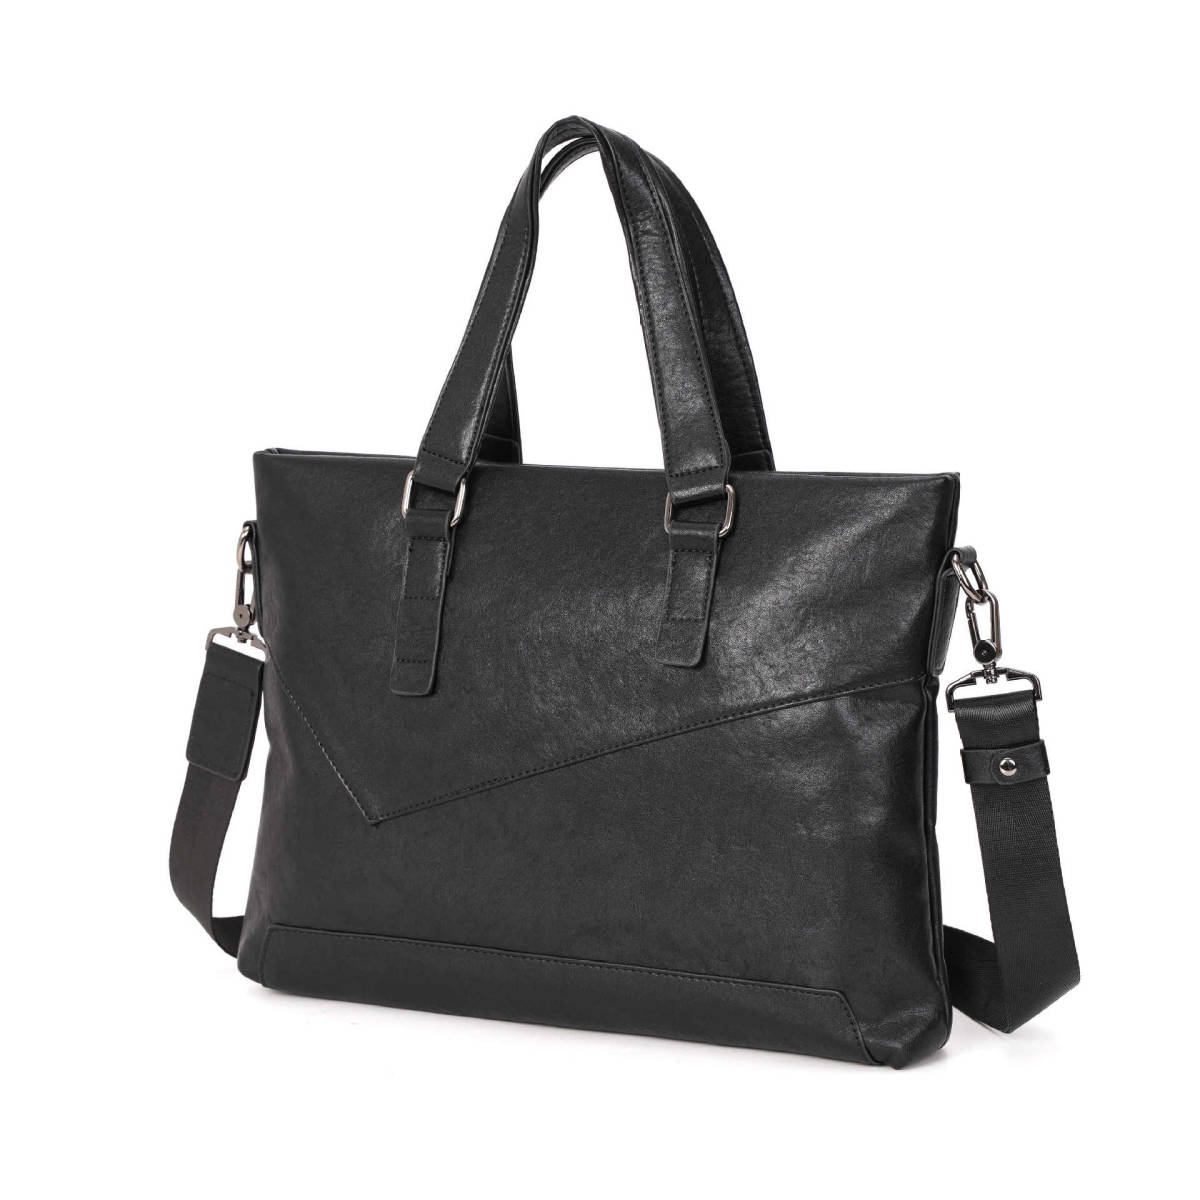  высококачественный PU кожа  ... сумка   мужской PC сумка   наплечная сумка 　... Leaf   кейс   ширина   модель   ...   ...　PC сумка  　 черный 